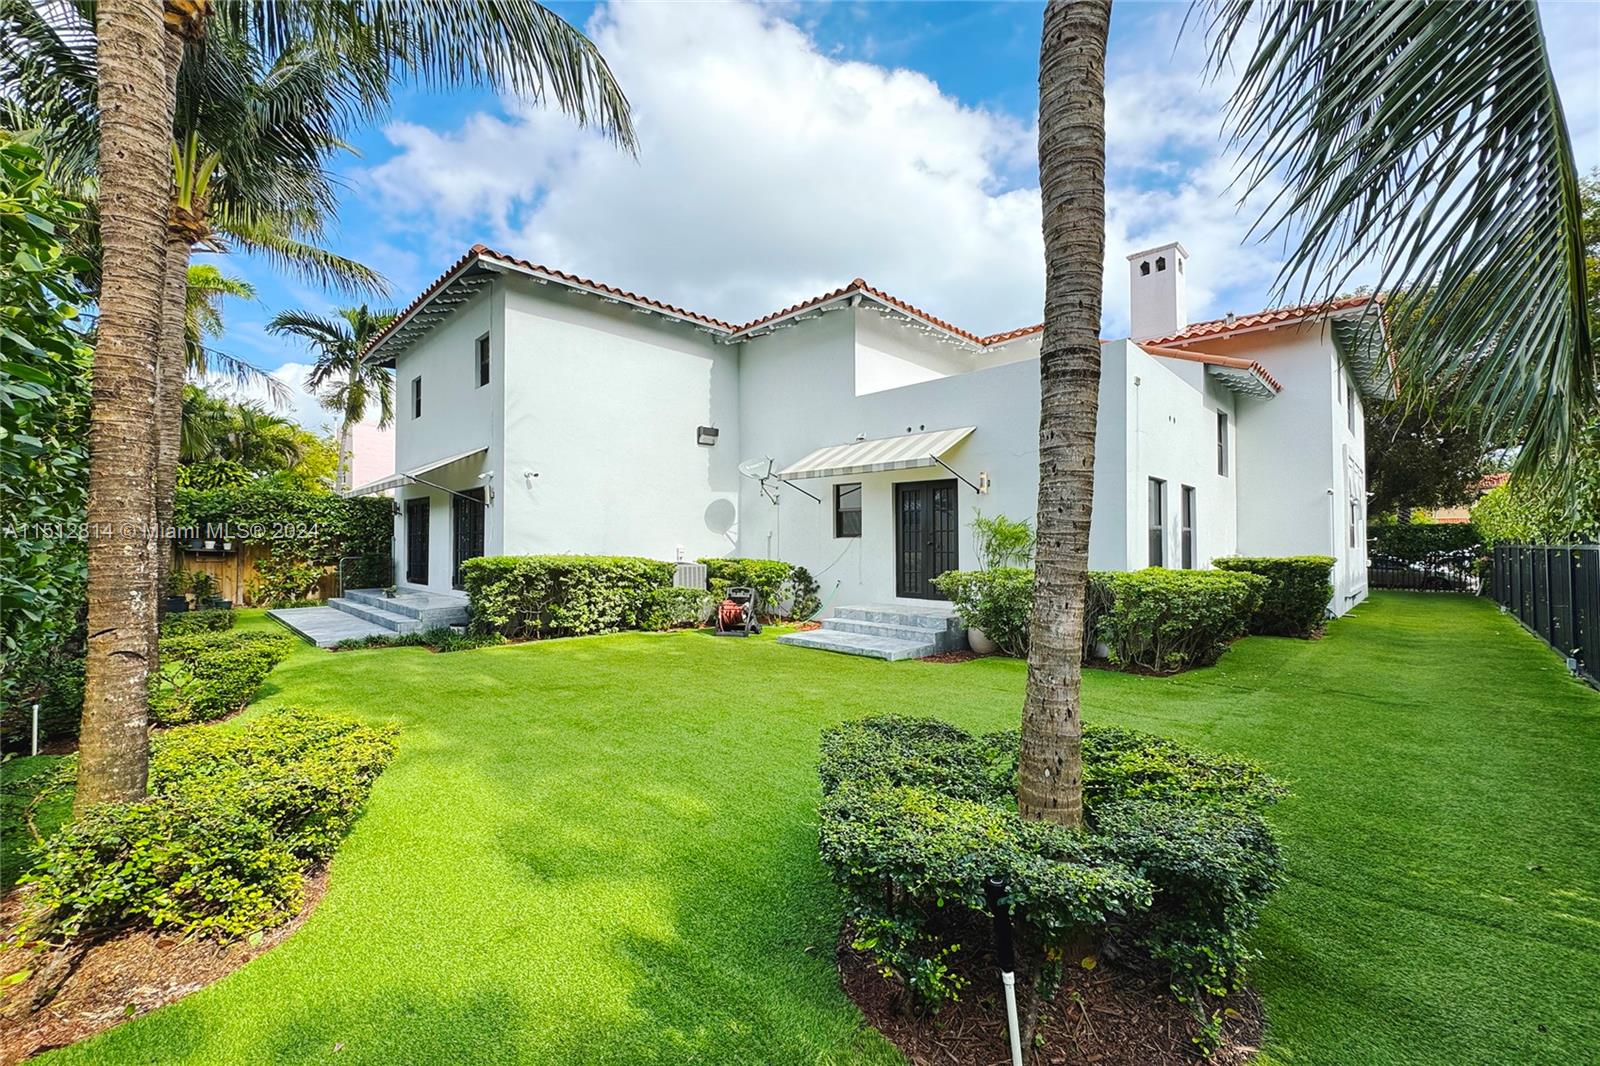 Property for Sale at 4312 Alton Rd Rd, Miami Beach, Miami-Dade County, Florida - Bedrooms: 4 
Bathrooms: 4  - $2,500,000